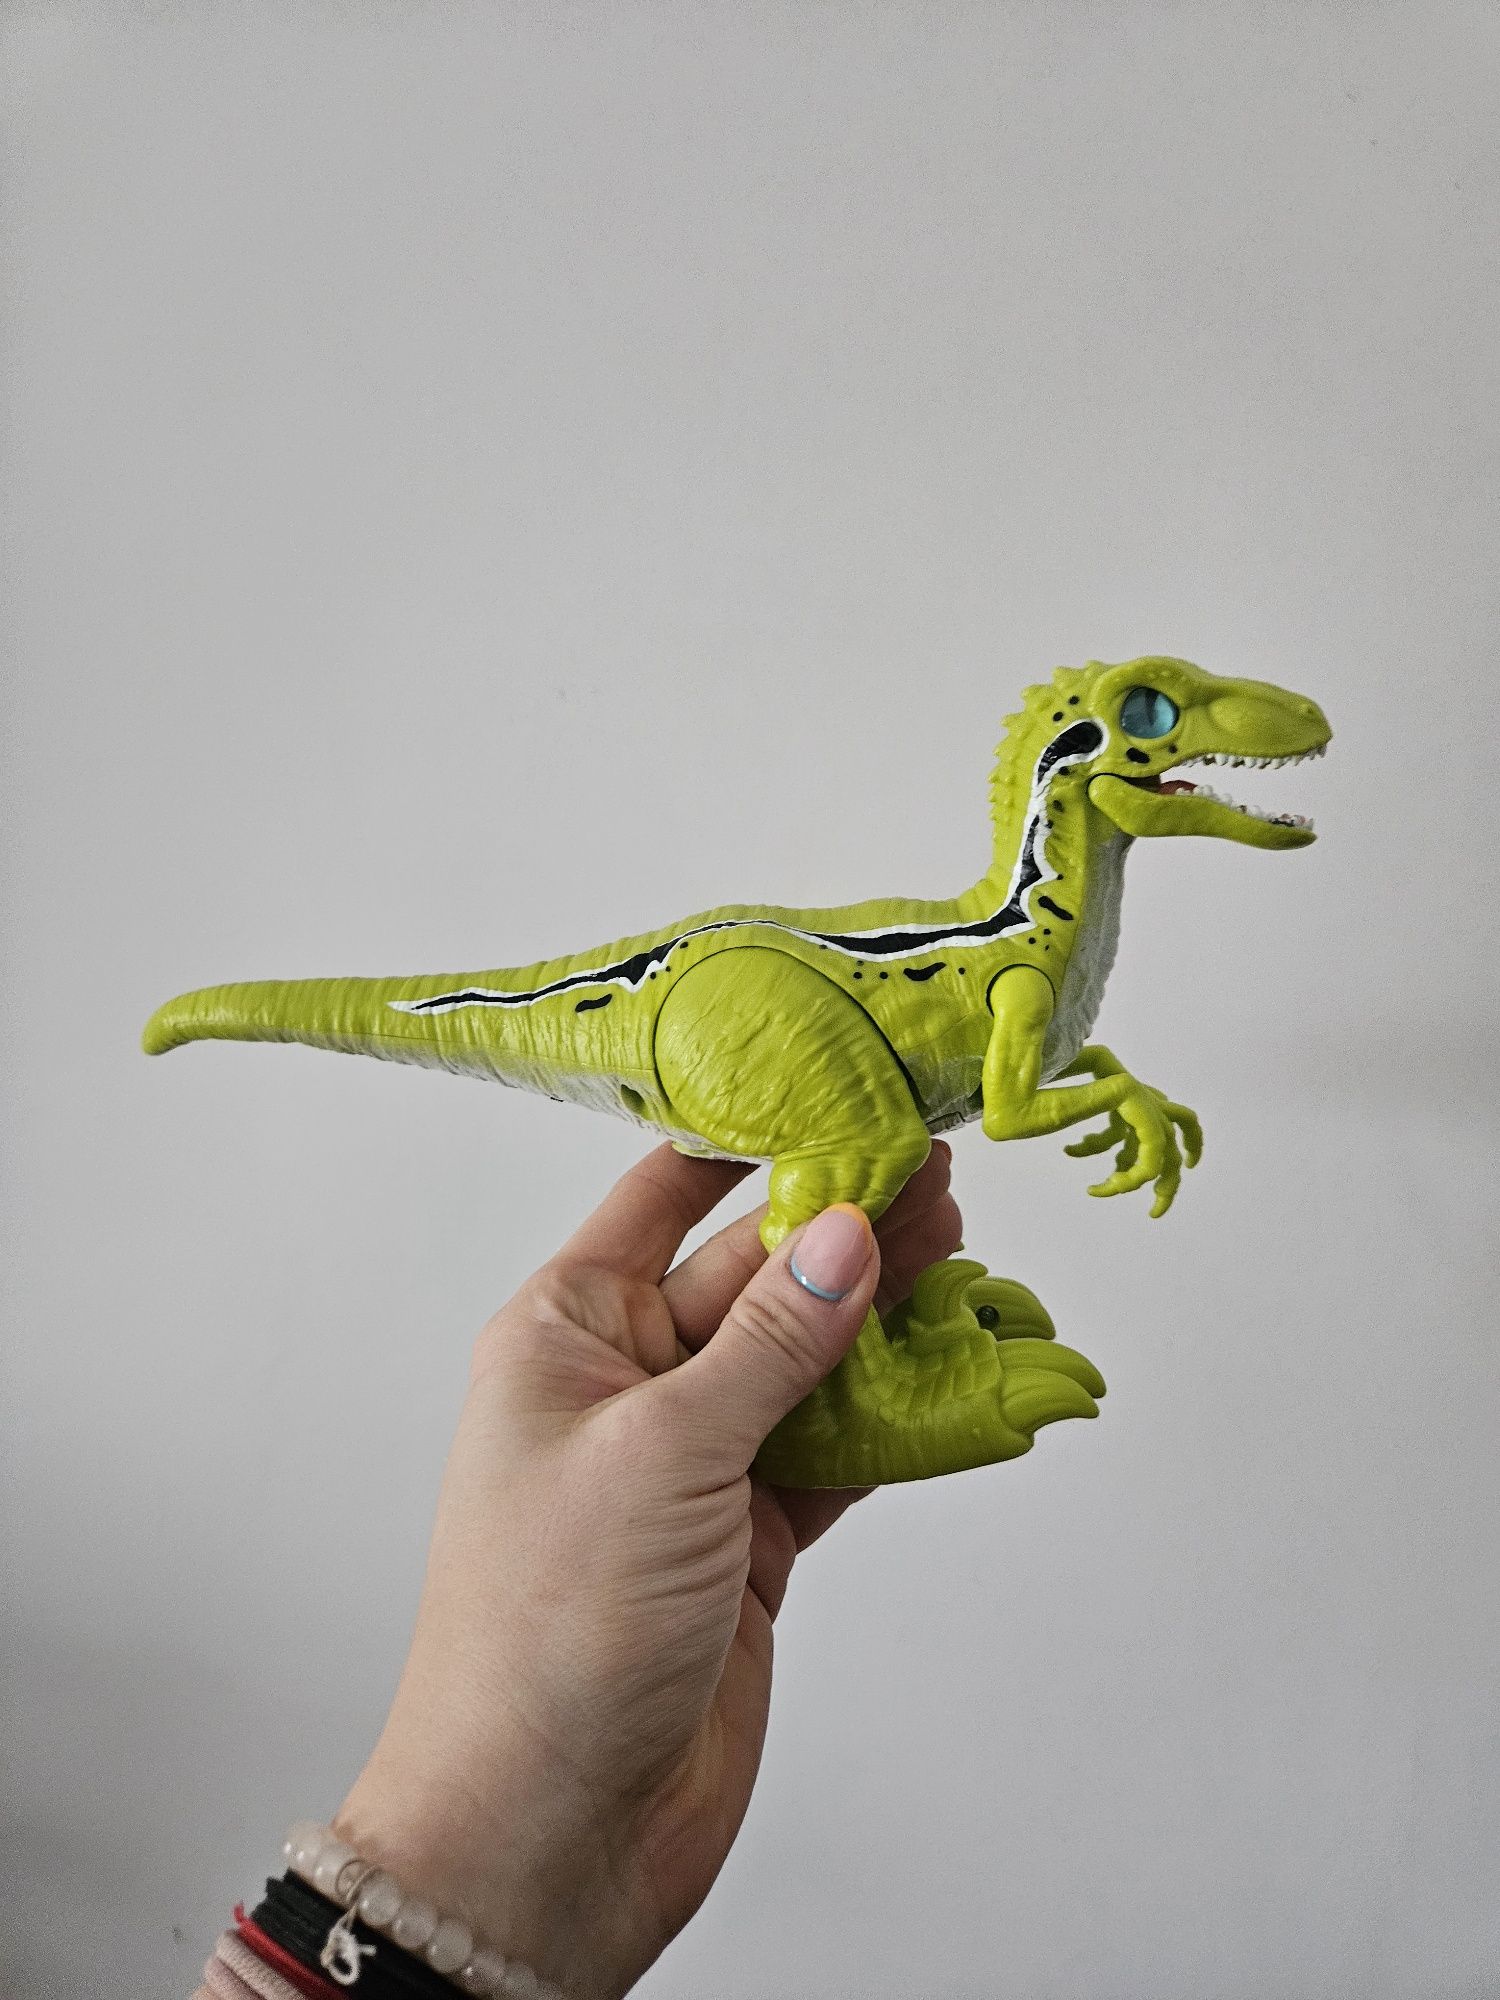 Zabawka robot dinozaur.  Chodzi i rusza szczęką